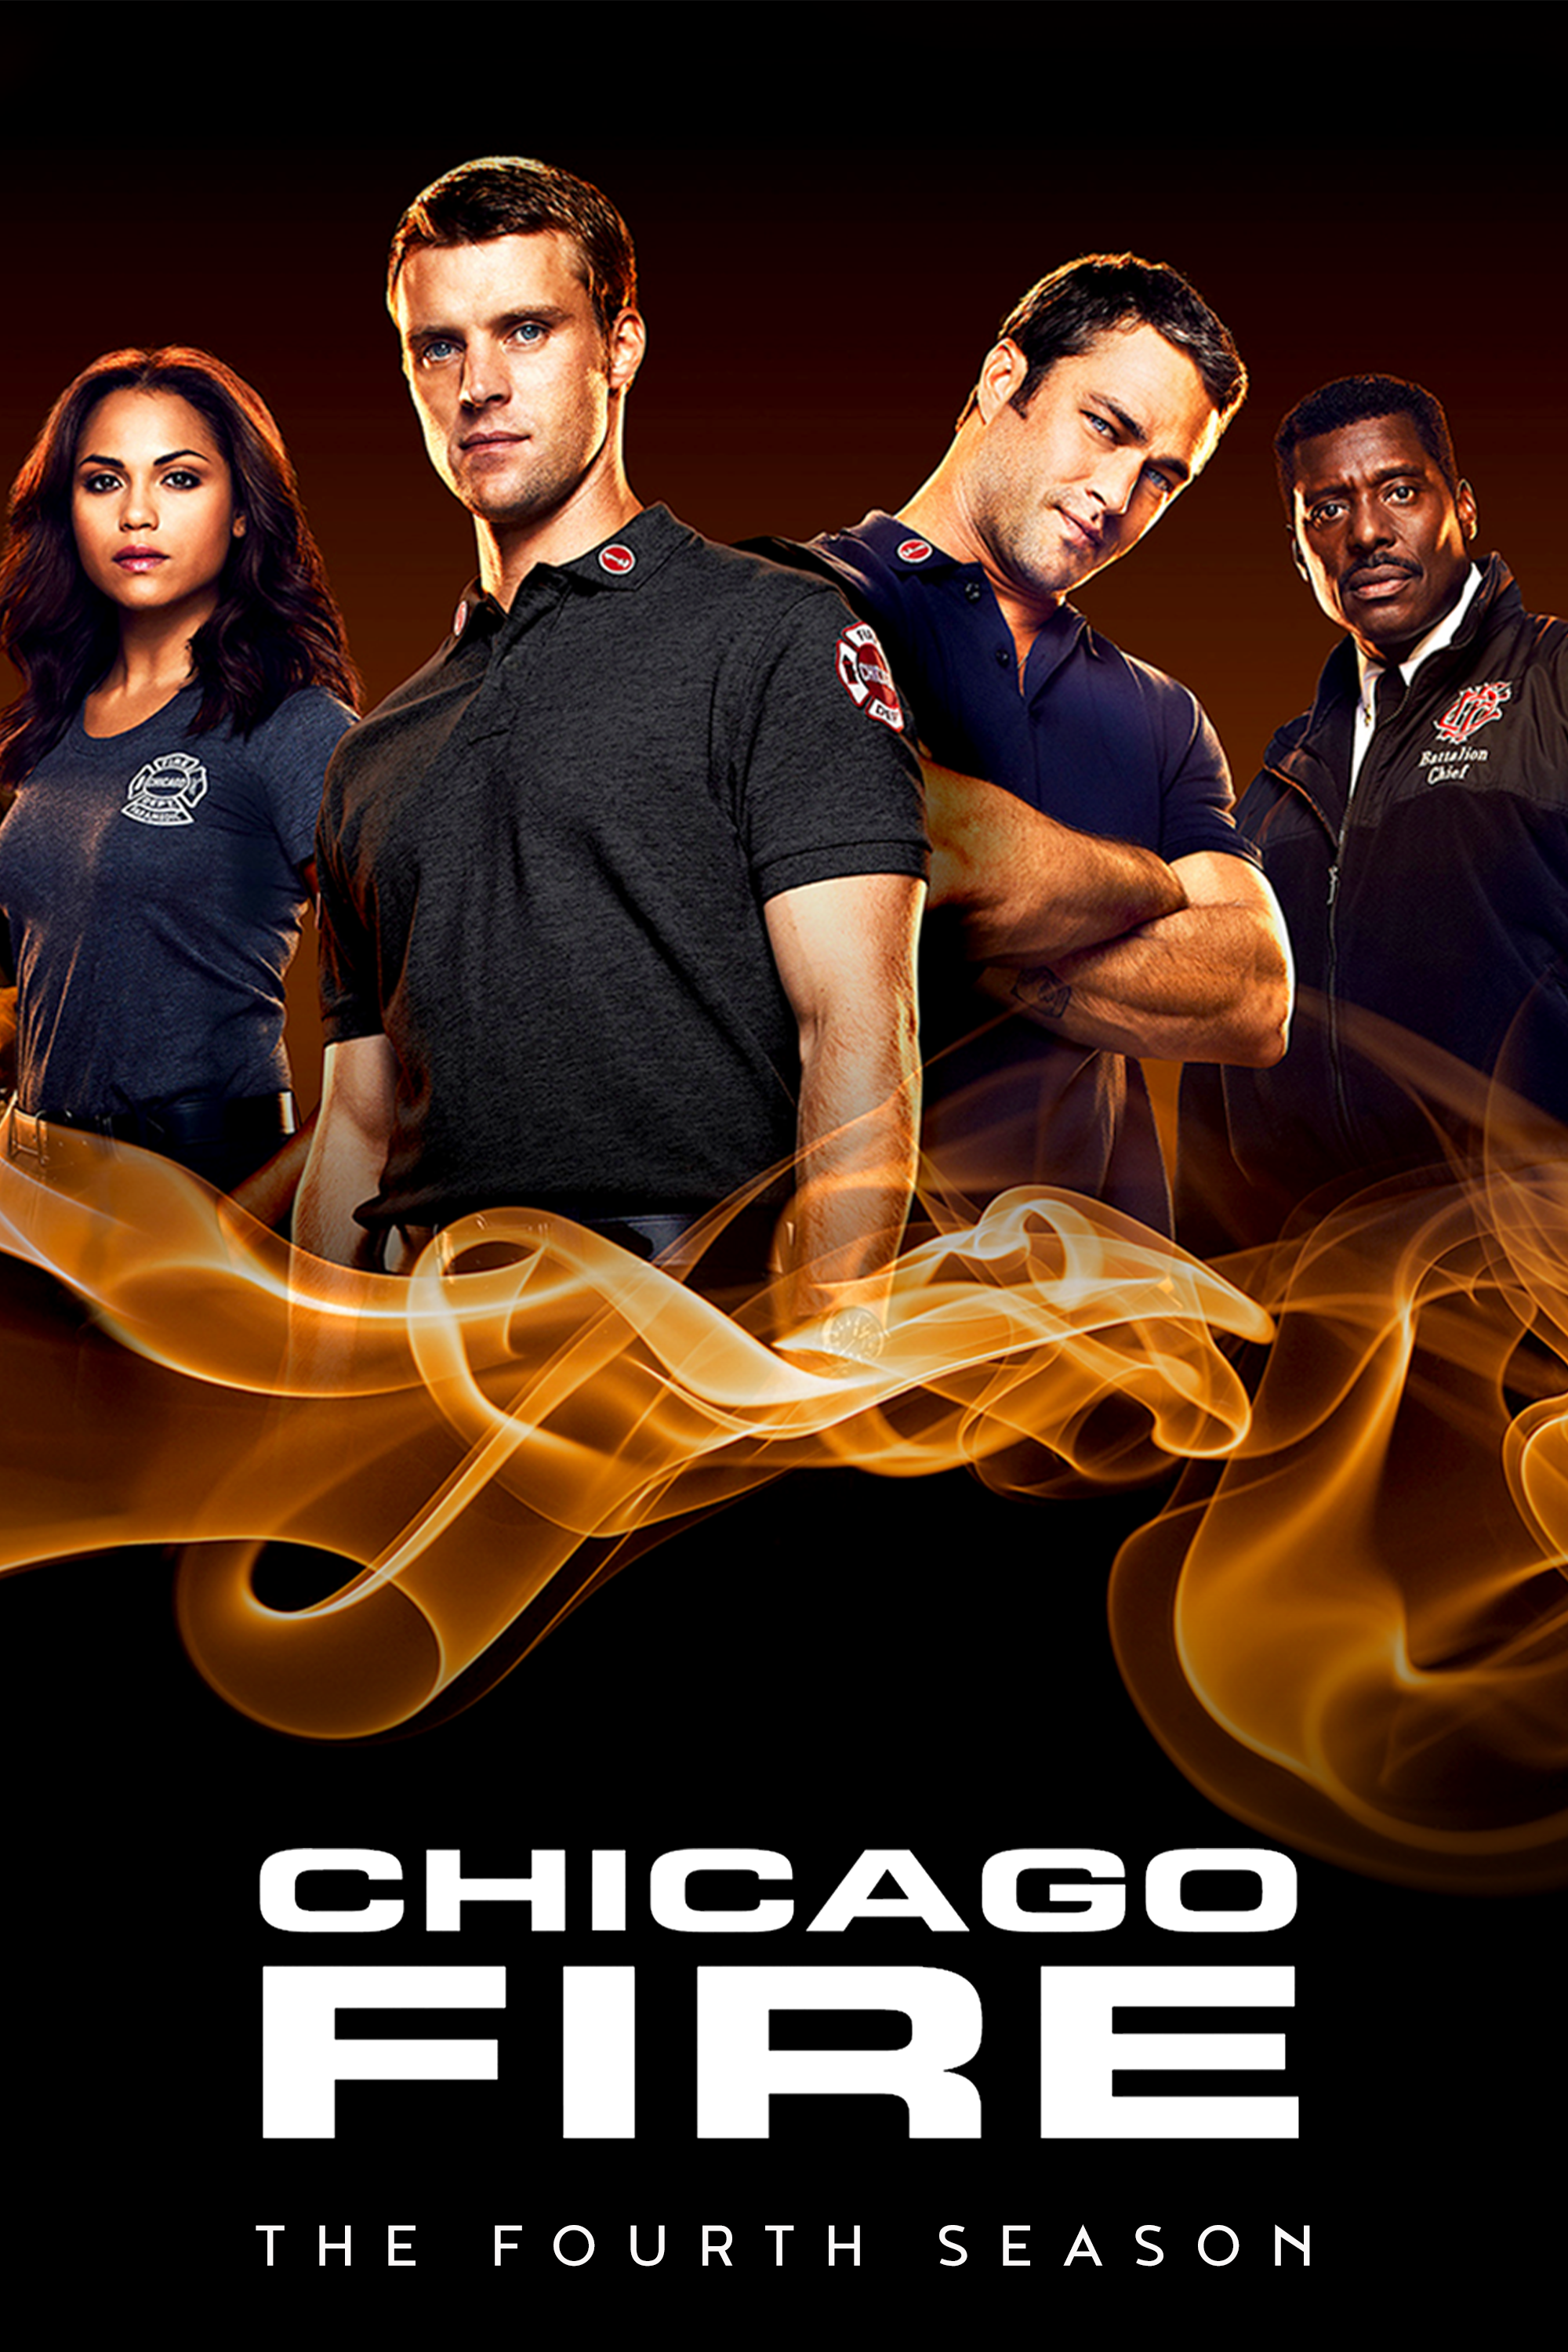 ดูหนังออนไลน์ฟรี Chicago Fire Season 4 EP.23 ชิคาโก้ ไฟร์ หน่วยดับเพลิงท้านรก ซีซั่นที่ 4 ตอนที่ 23